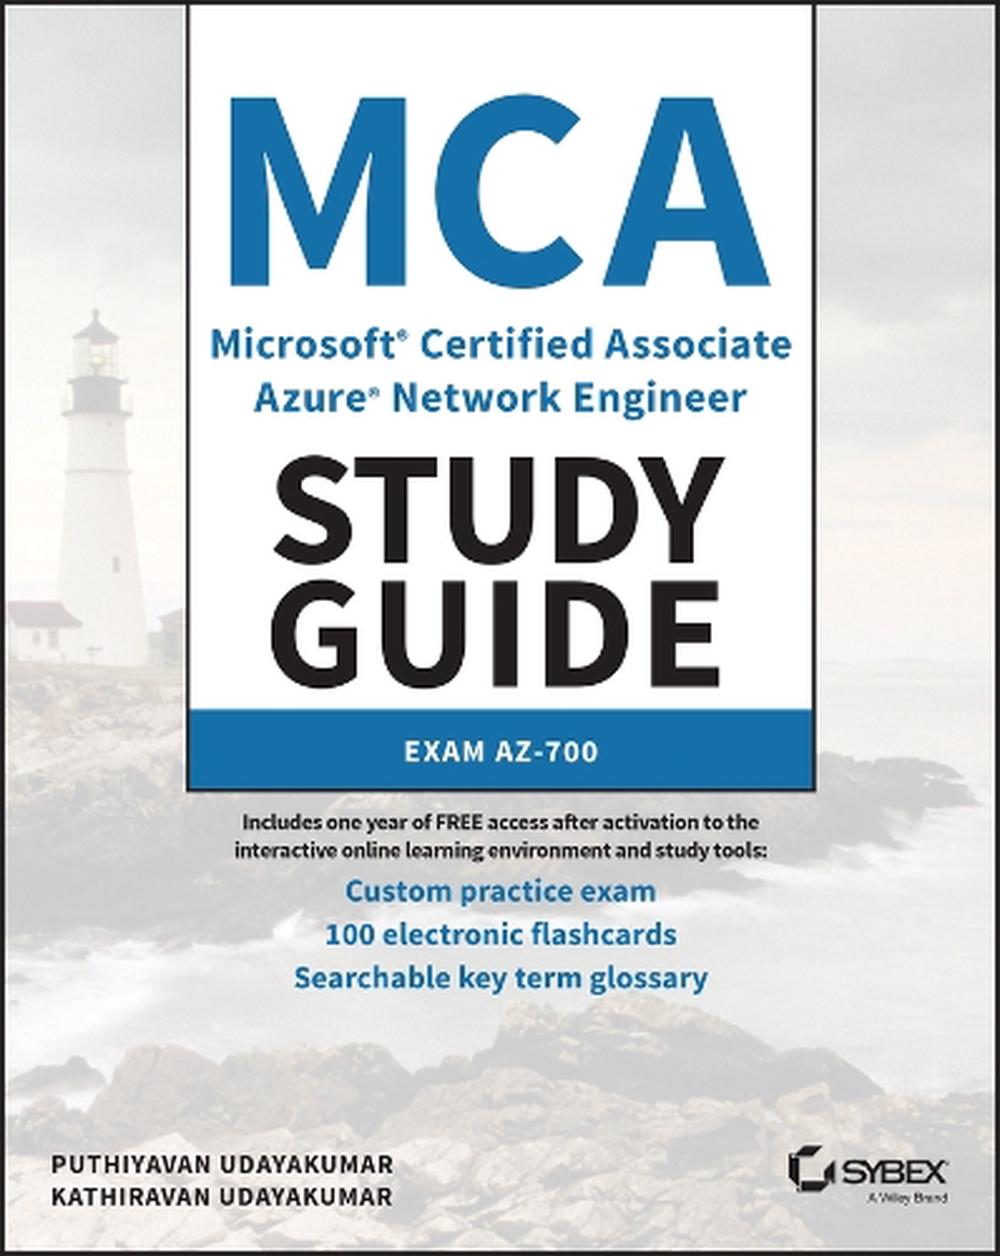 MCA　9781119872924　Paperback,　Udayakumar,　Puthiyavan　The　by　Study　Guide　Network　Azure　Associate　at　Microsoft　Nile　Buy　Certified　Engineer　online